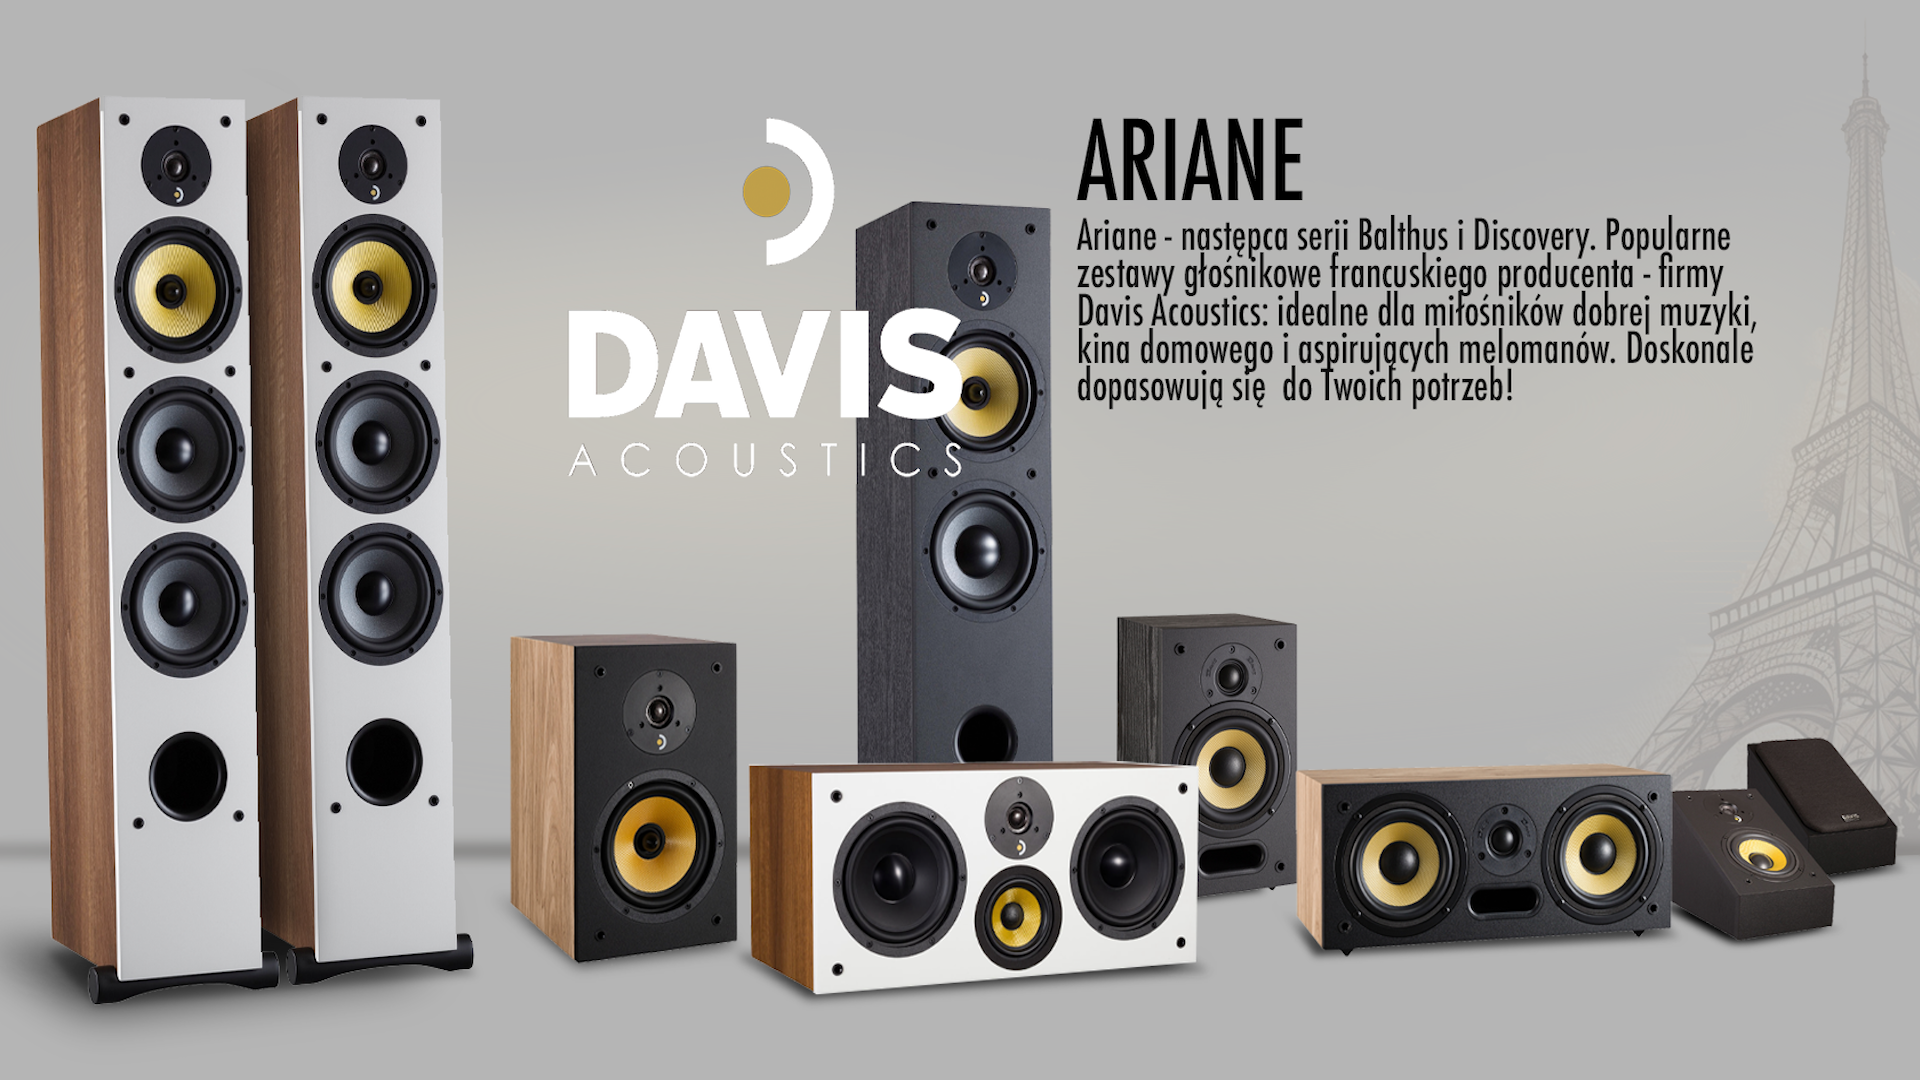 Davis Acoustics Ariane - nowa seria